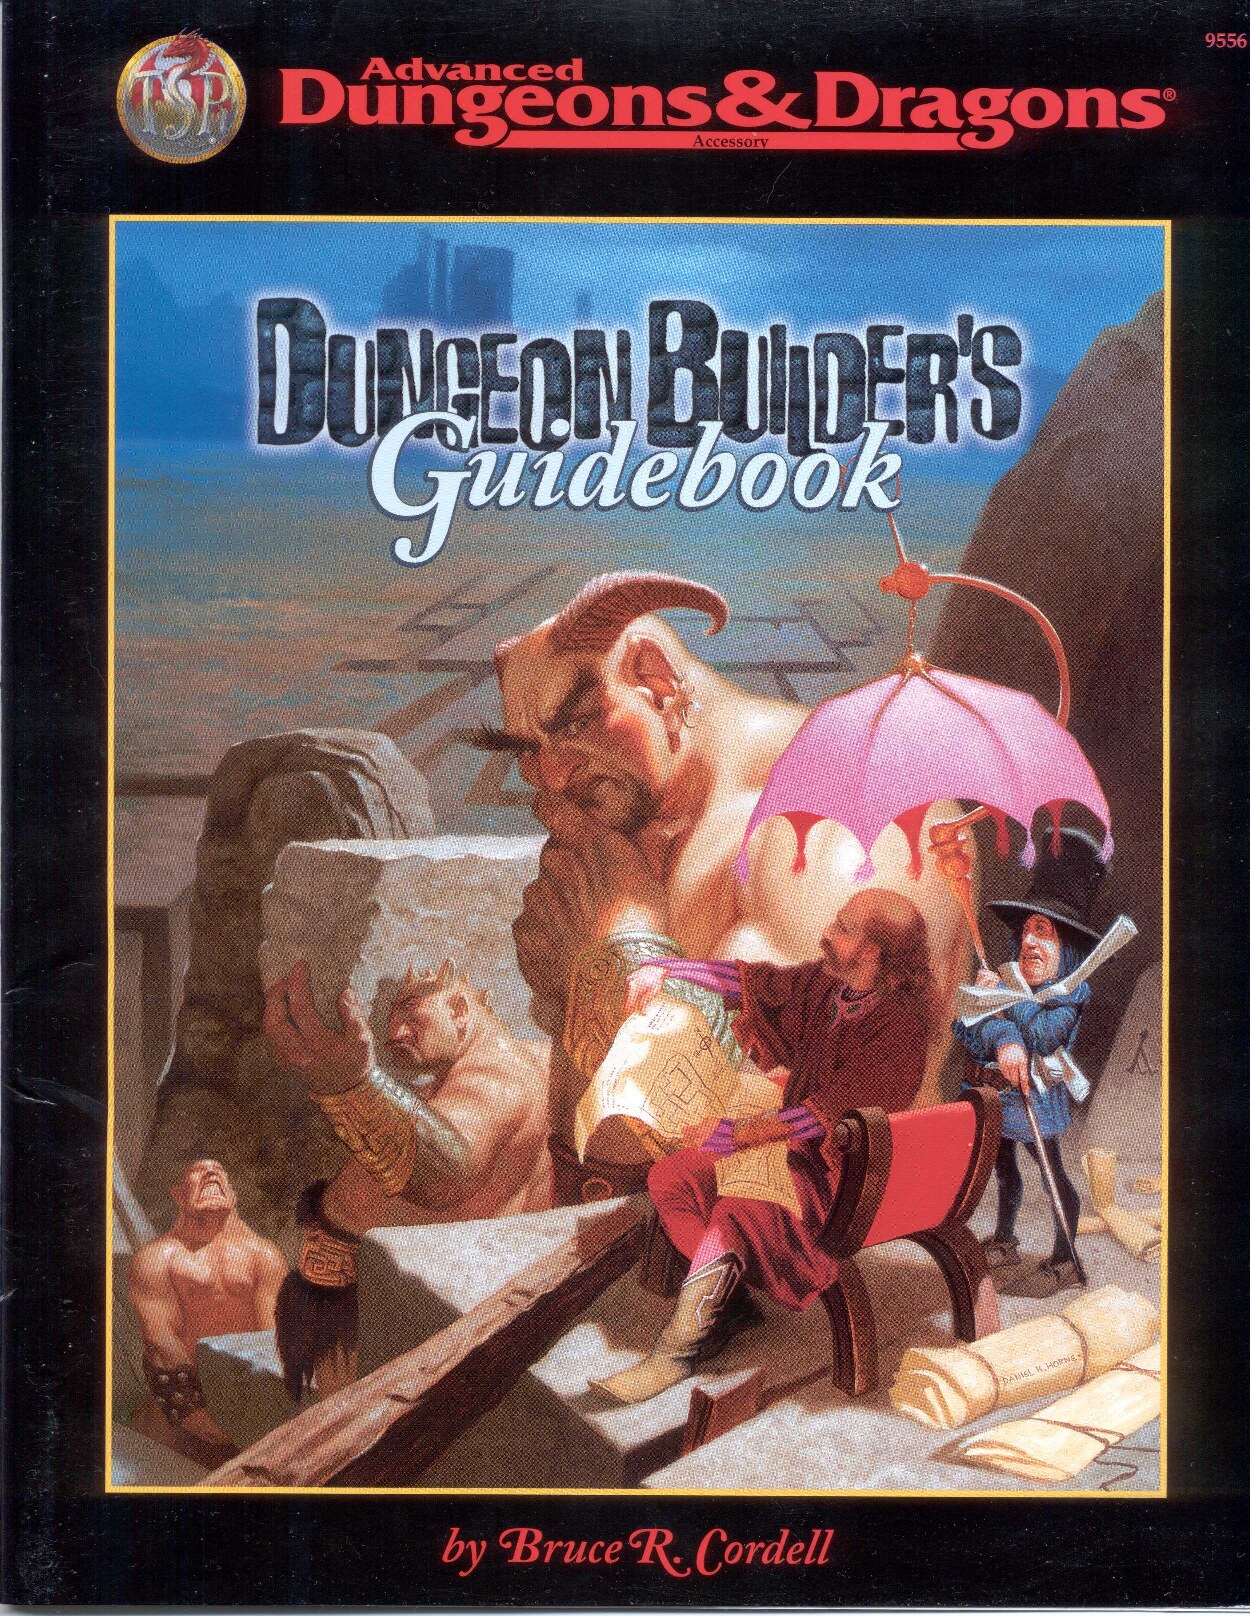 Dugeon Builder's Guidebook